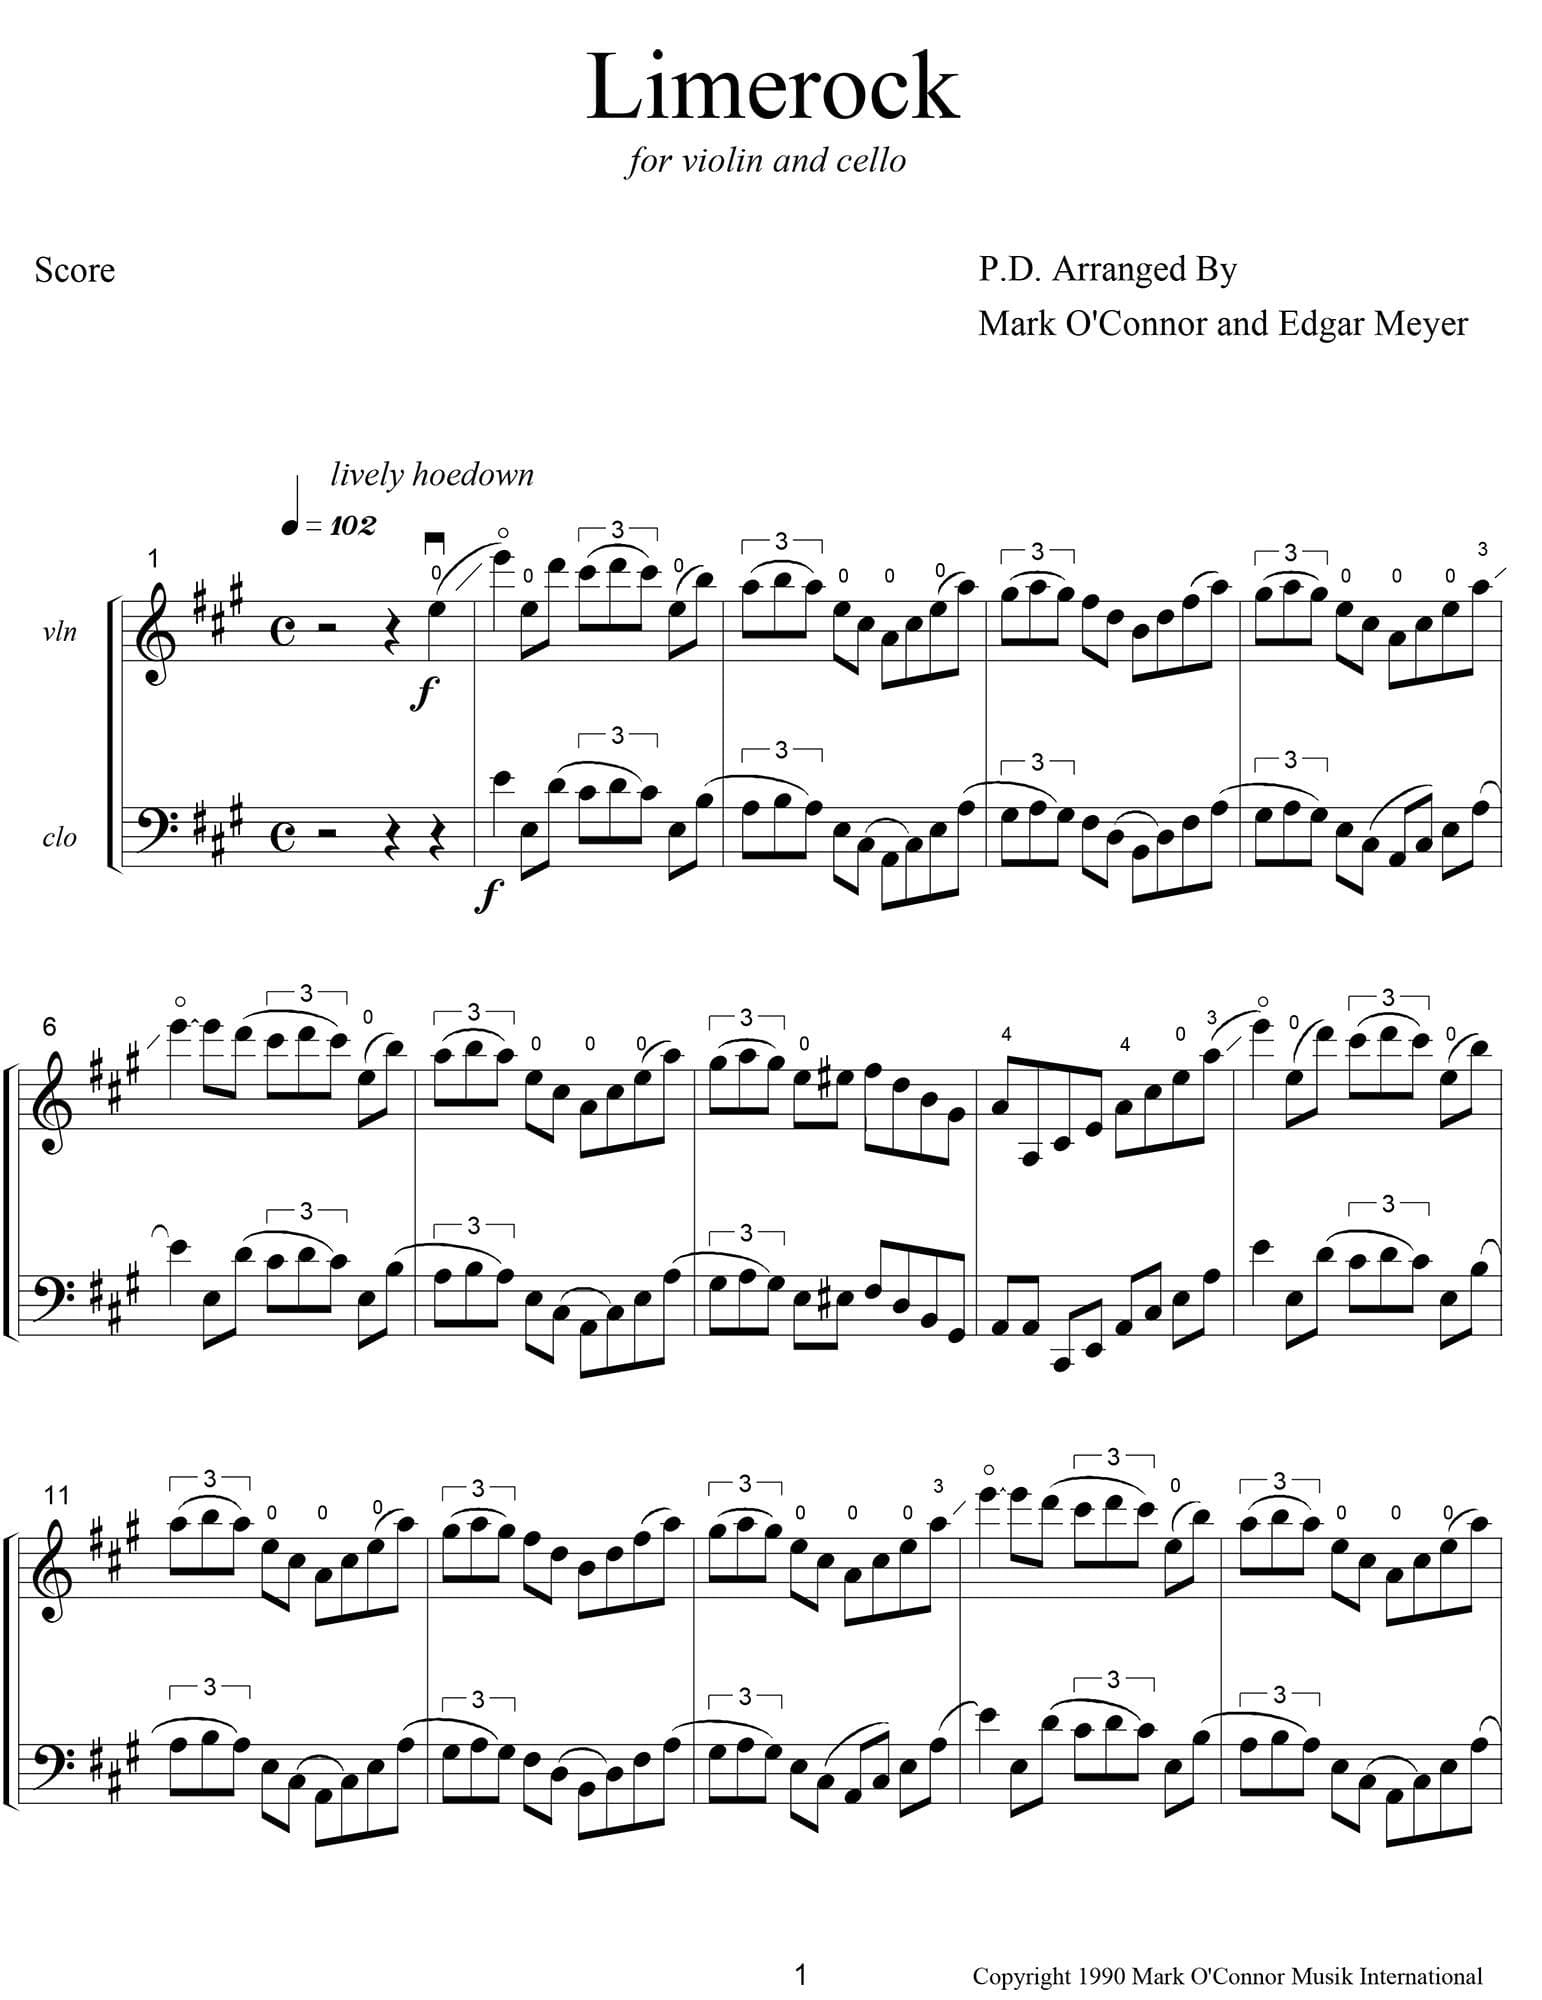 O'Connor, Mark - Limerock for Violin and Cello - Score - Digital Download